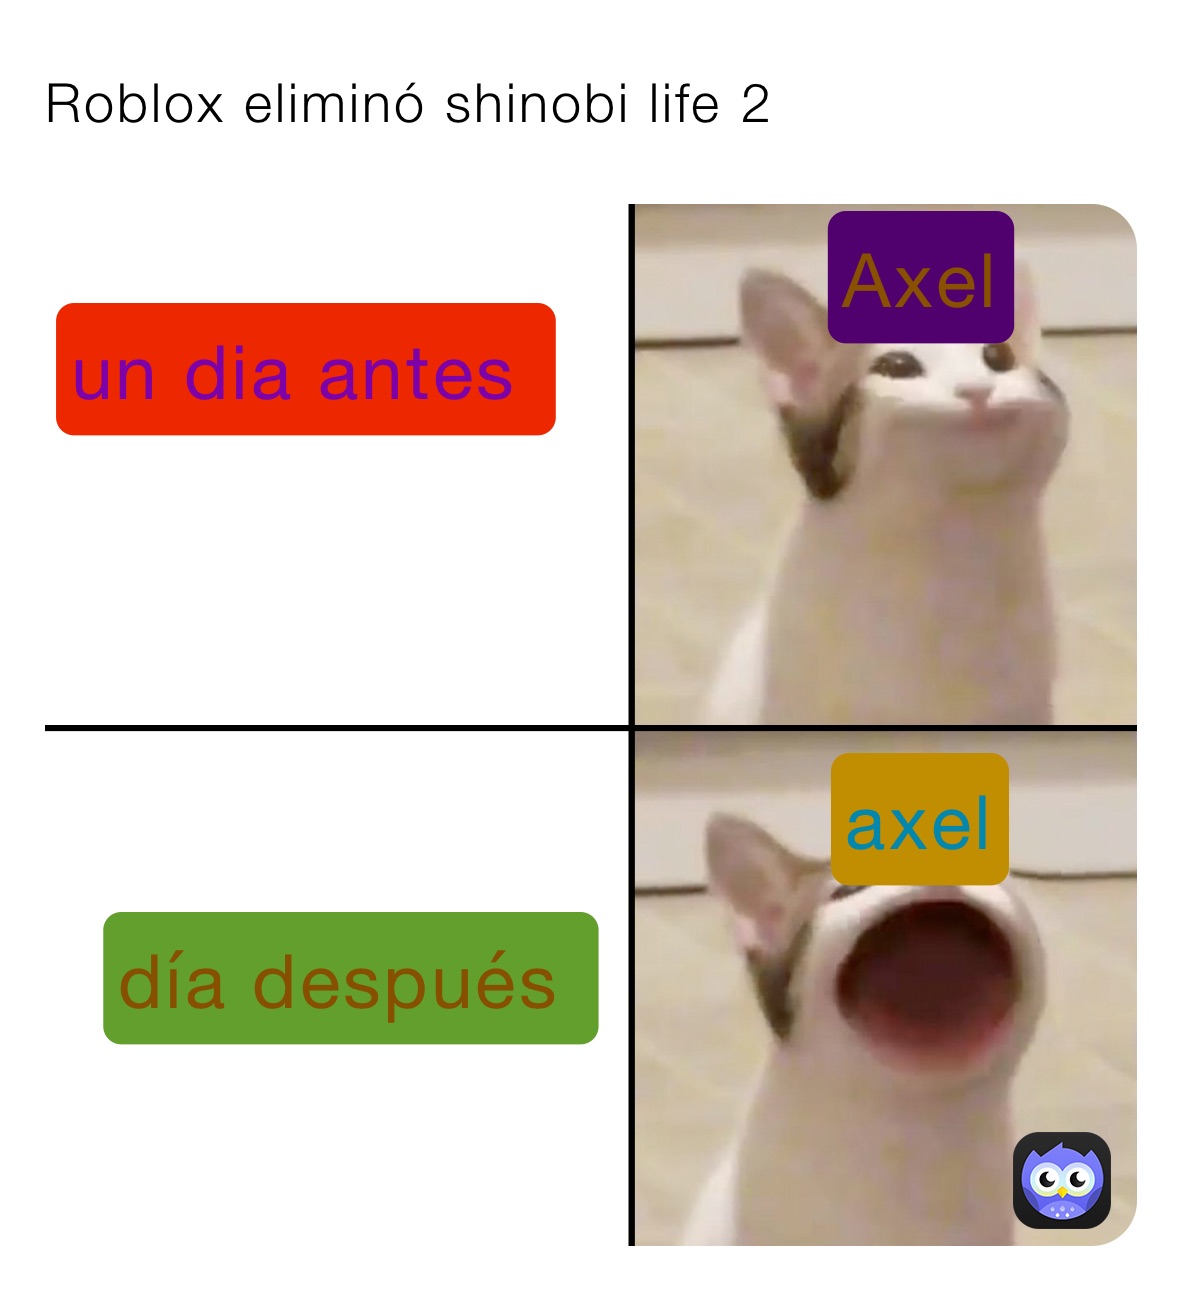 Roblox Elimina Shinobi Life 2 Eydanescobar11 Memes - cat shinobi roblox